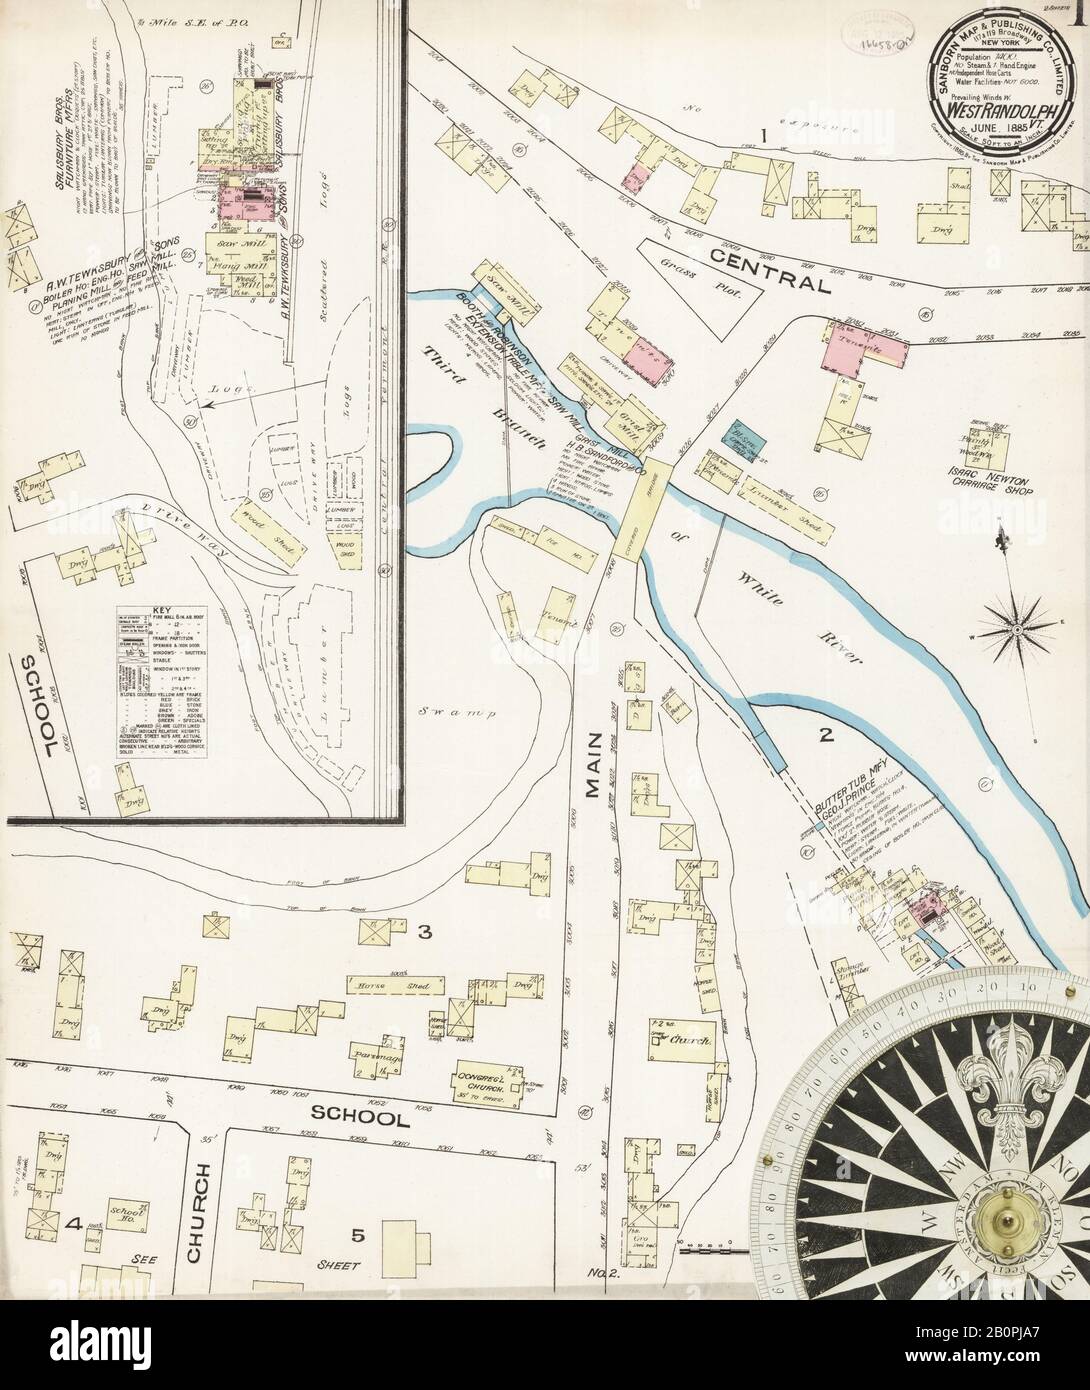 Imagen 1 Del Mapa Del Seguro Contra Incendios Sanborn De West Randolph, Condado De Orange, Vermont. Jun 1885. 2 Hoja(s), América, mapa de calles con una brújula del siglo Xix Foto de stock